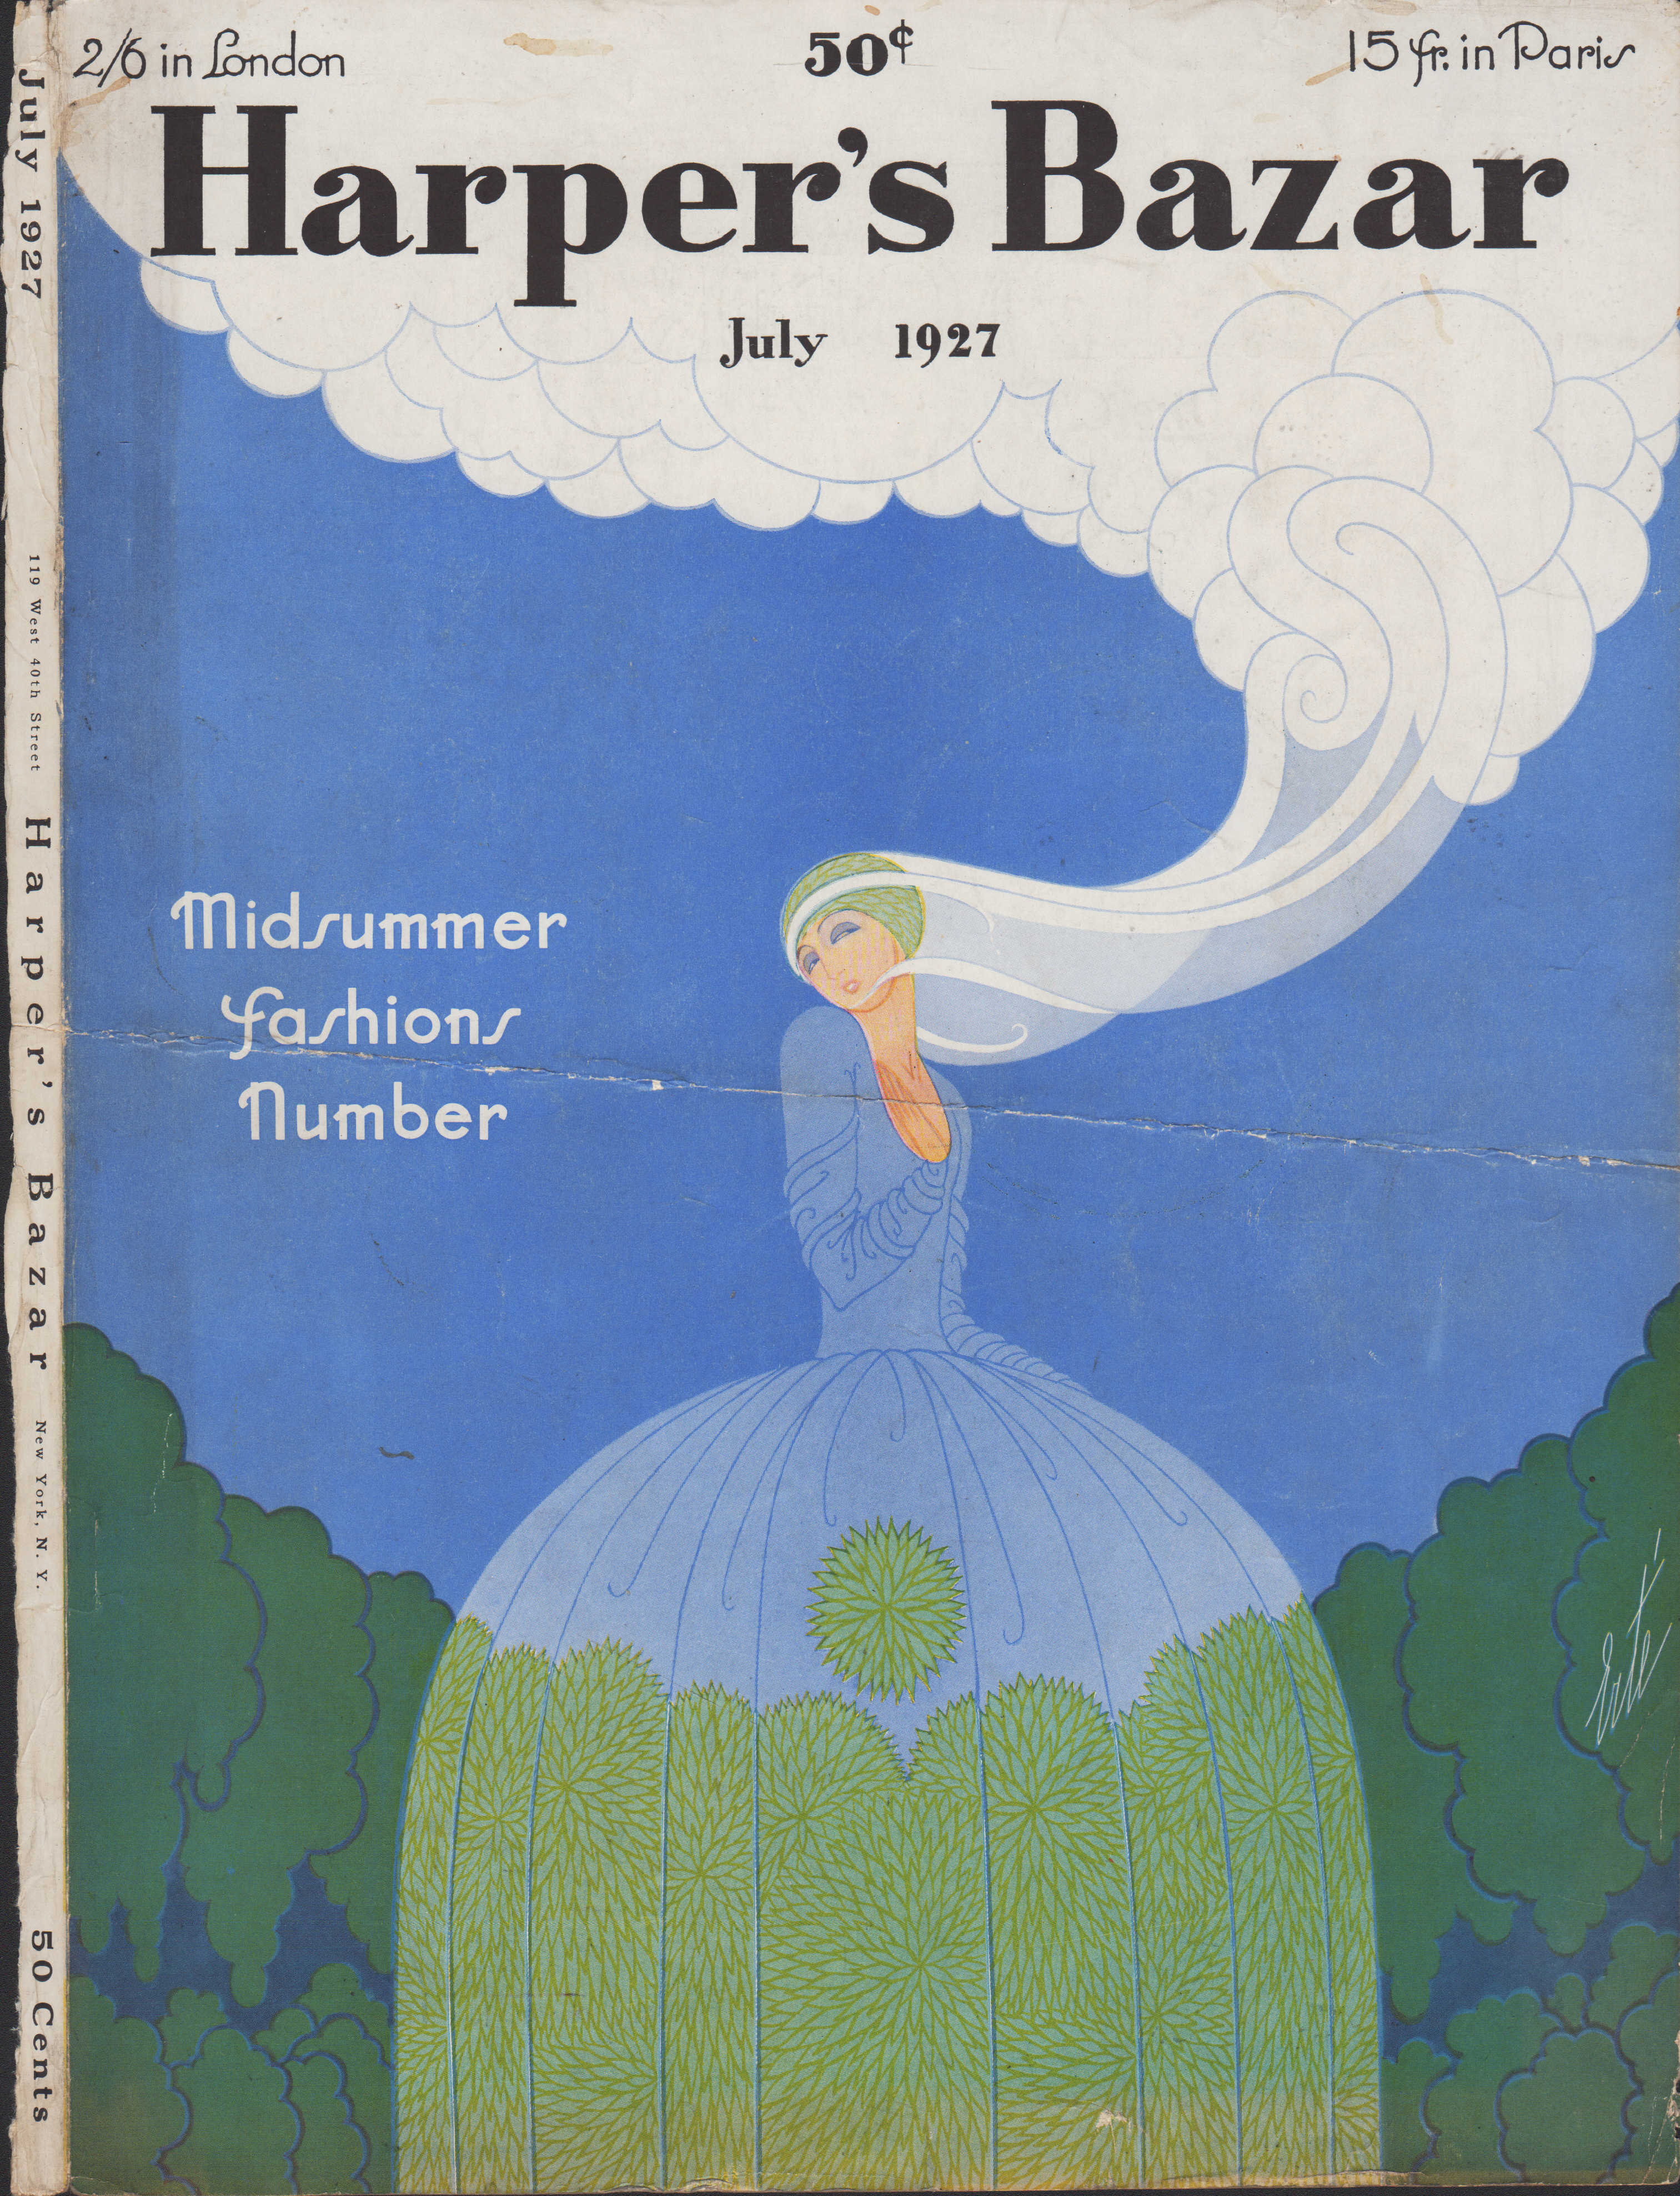 Image for Harper's Bazar (Harper's Bazaar) July, 1927 - Cover Only Midsumer Fashion Number